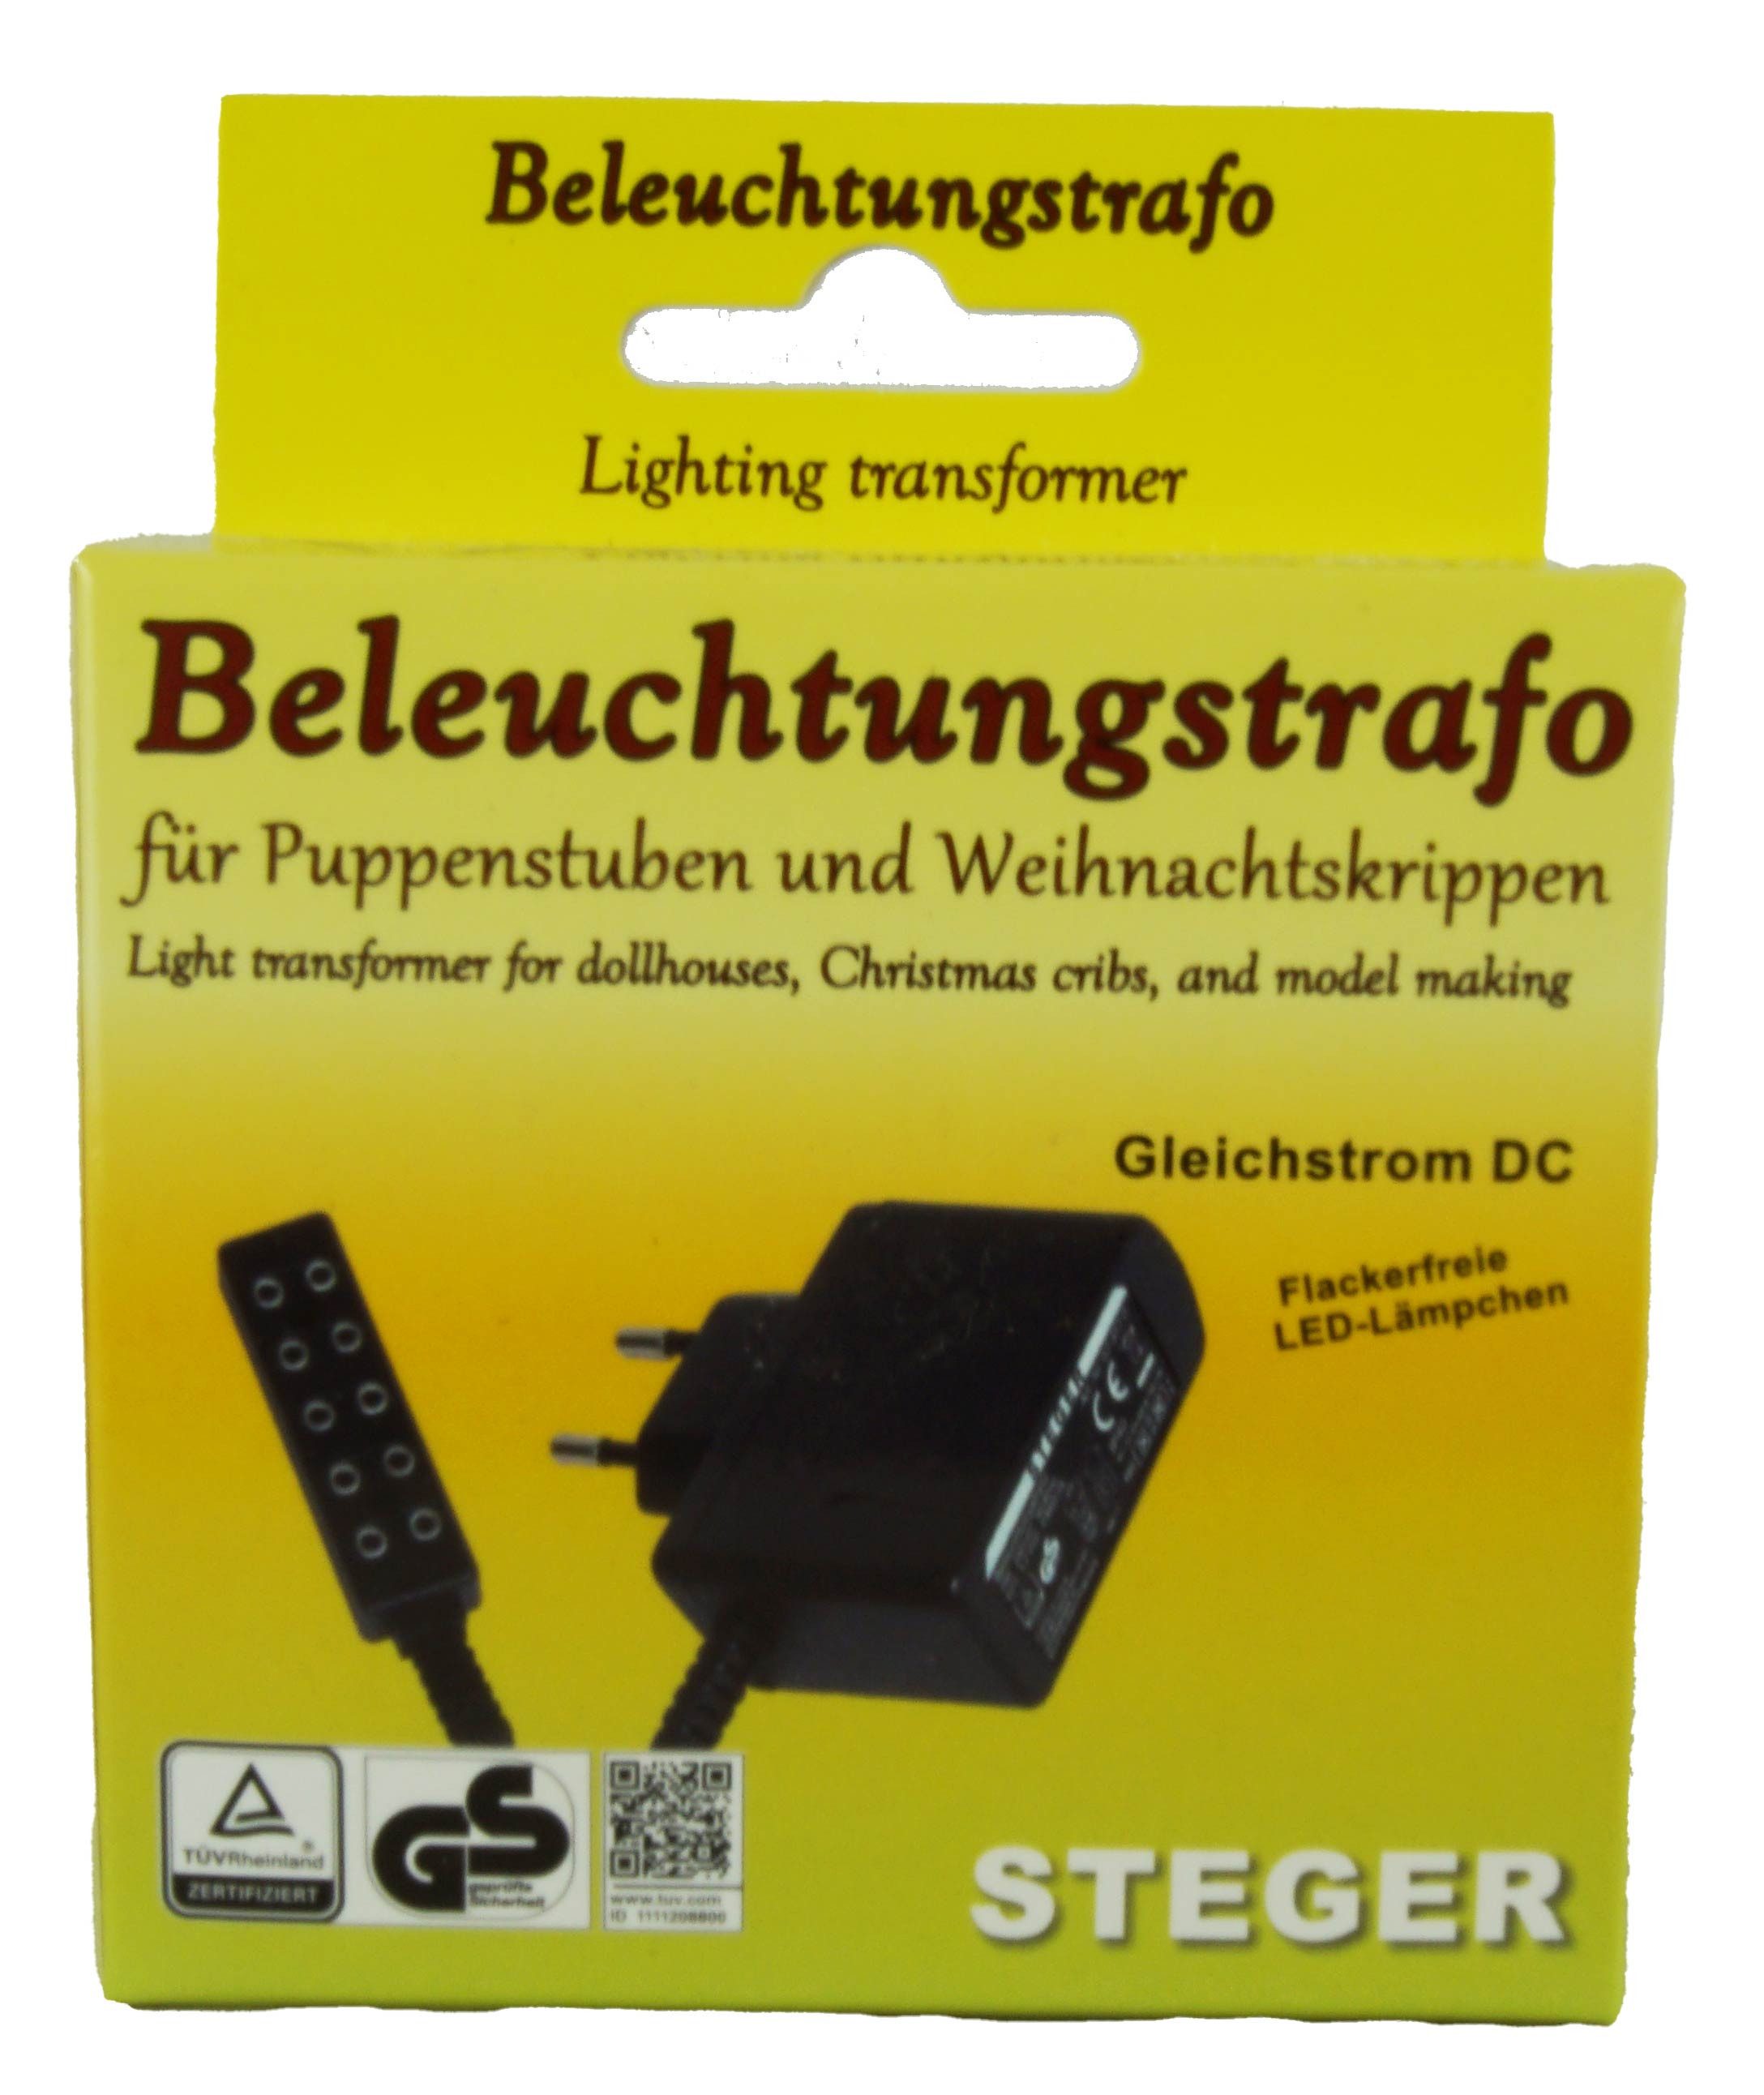 Franz Steger Transformatorenbau GmbH Steger Beleuchtungstrafo für Flackerlicht Trafo